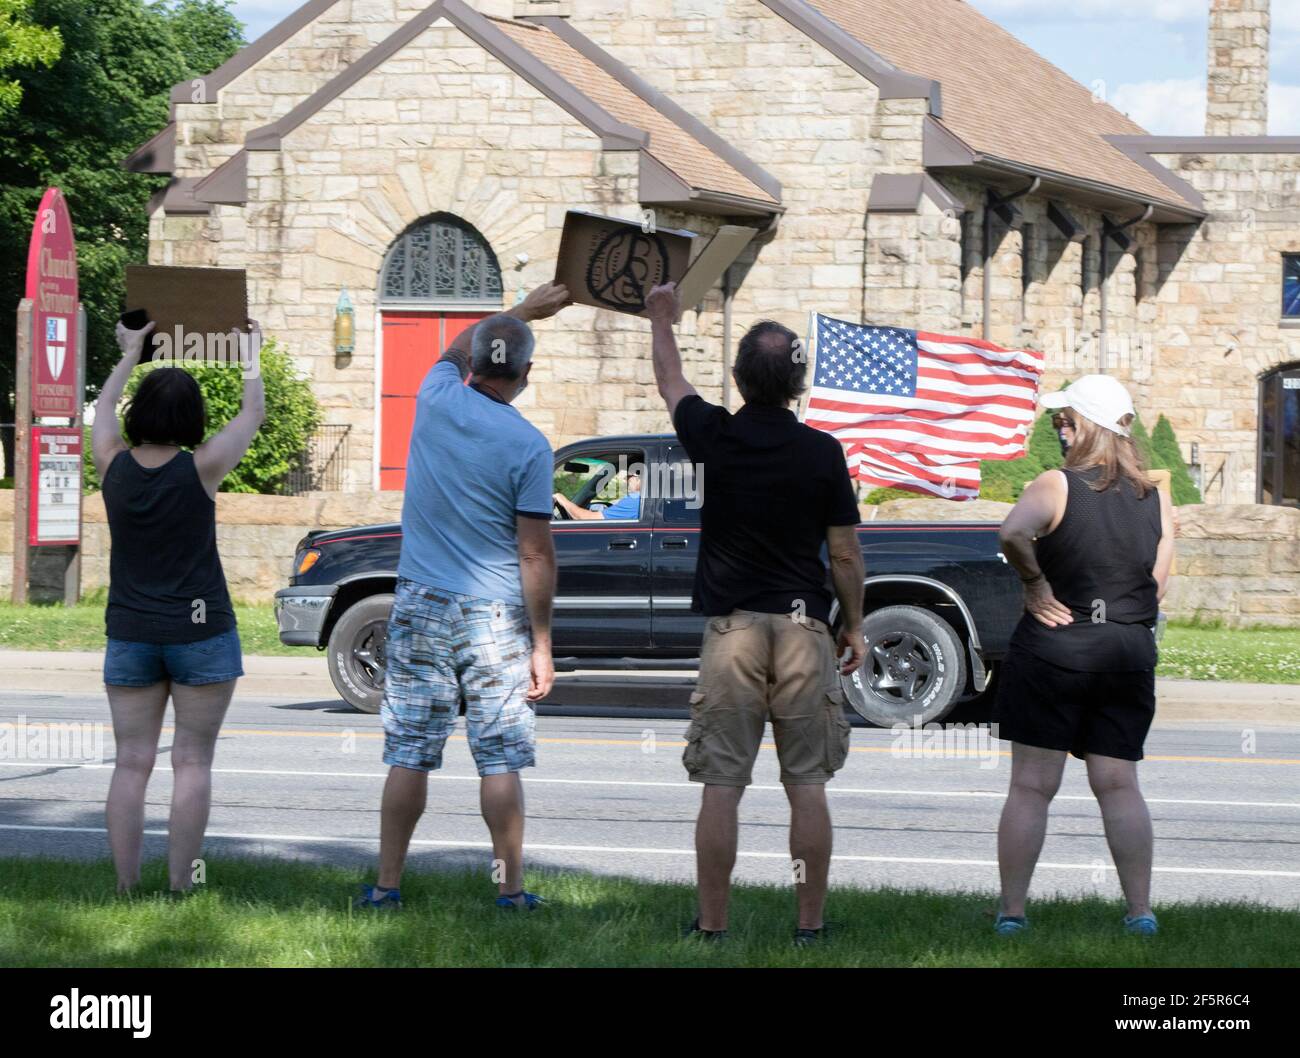 Weiße Männer und Frauen halten während des Friedens ein Friedenszeichen hoch Protest mit LKW und amerikanischer Flagge fahren vorbei Stockfoto